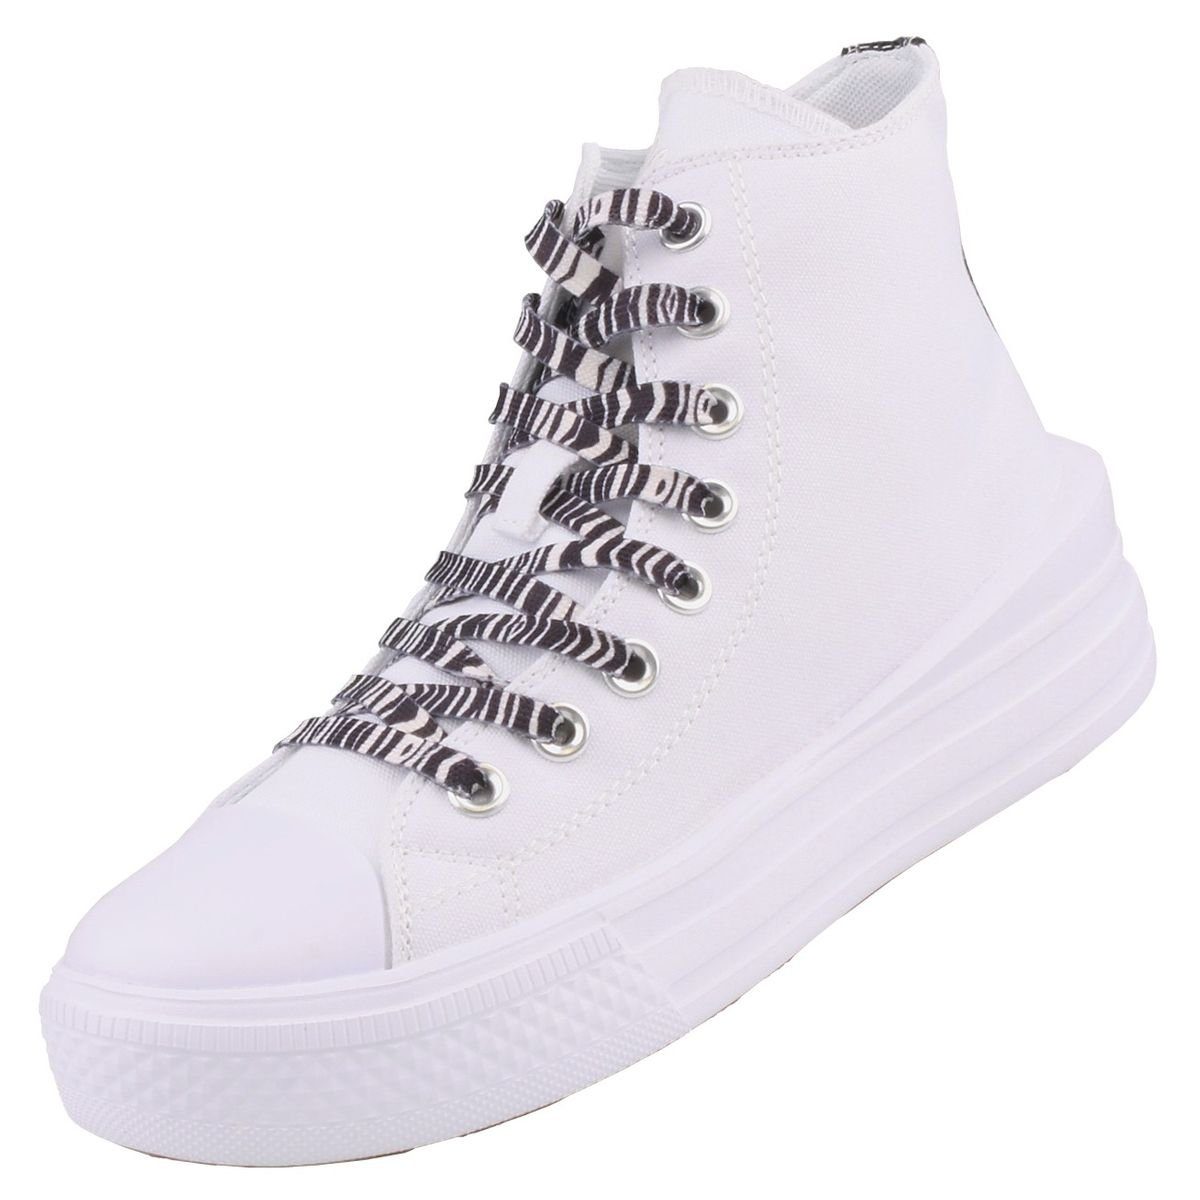 Sneaker Gerli Dockers by 50VL202-710500